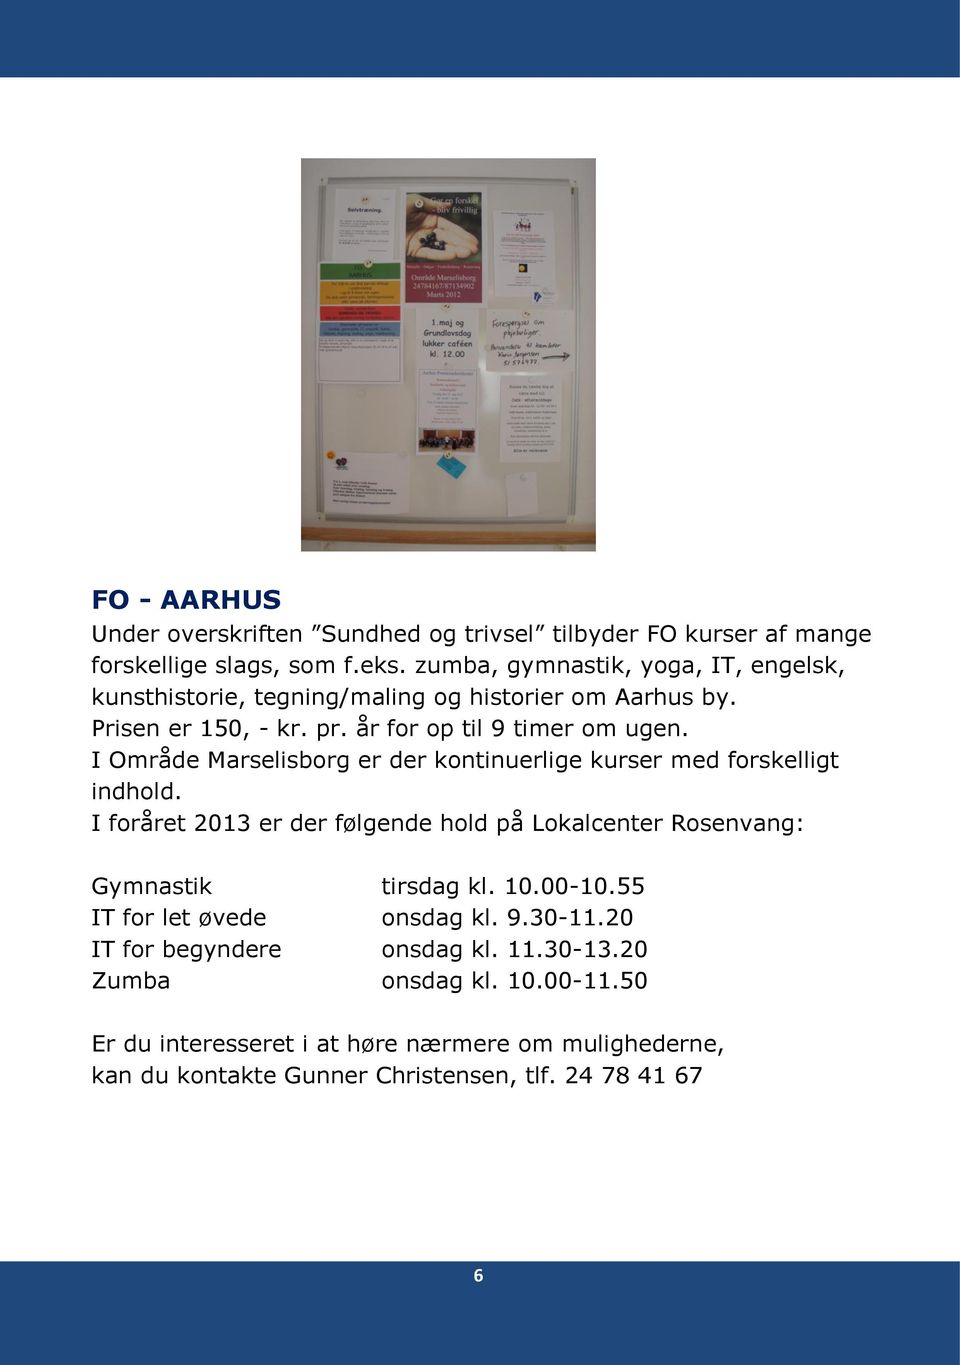 I Område Marselisborg er der kontinuerlige kurser med forskelligt indhold. I foråret 2013 er der følgende hold på Lokalcenter Rosenvang: Gymnastik tirsdag kl. 10.